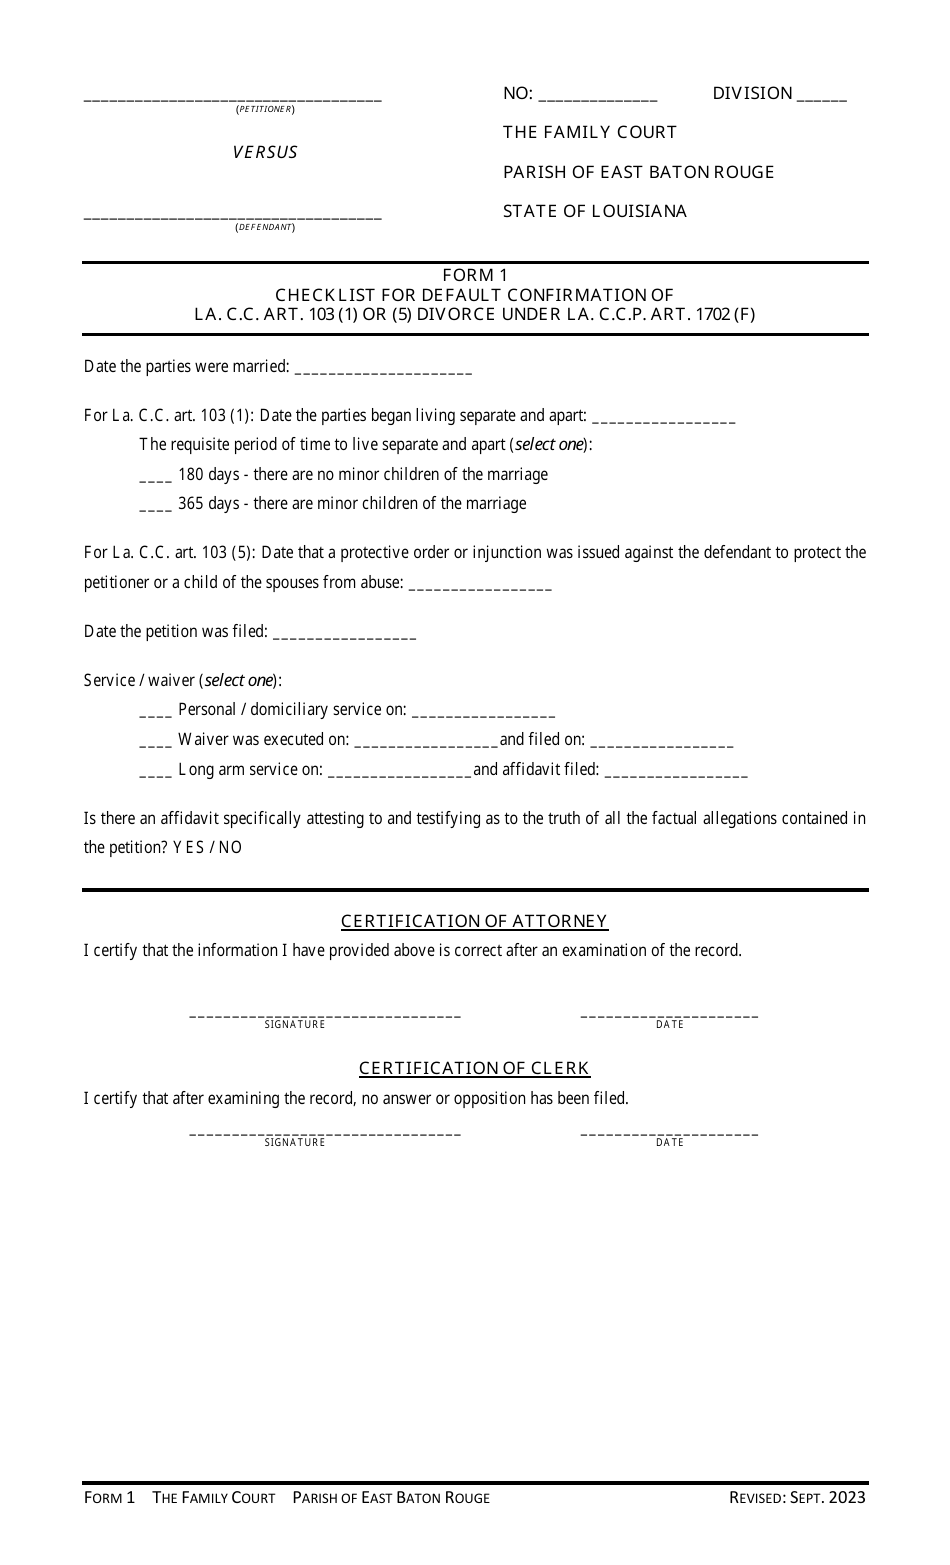 Form 1 Checklist for Default Confirmation of La. C.c. Art. 103 (1) or (5) Divorce Under La. C.c.p. Art. 1702 (F) - Parish of East Baton Rouge, Louisiana, Page 1